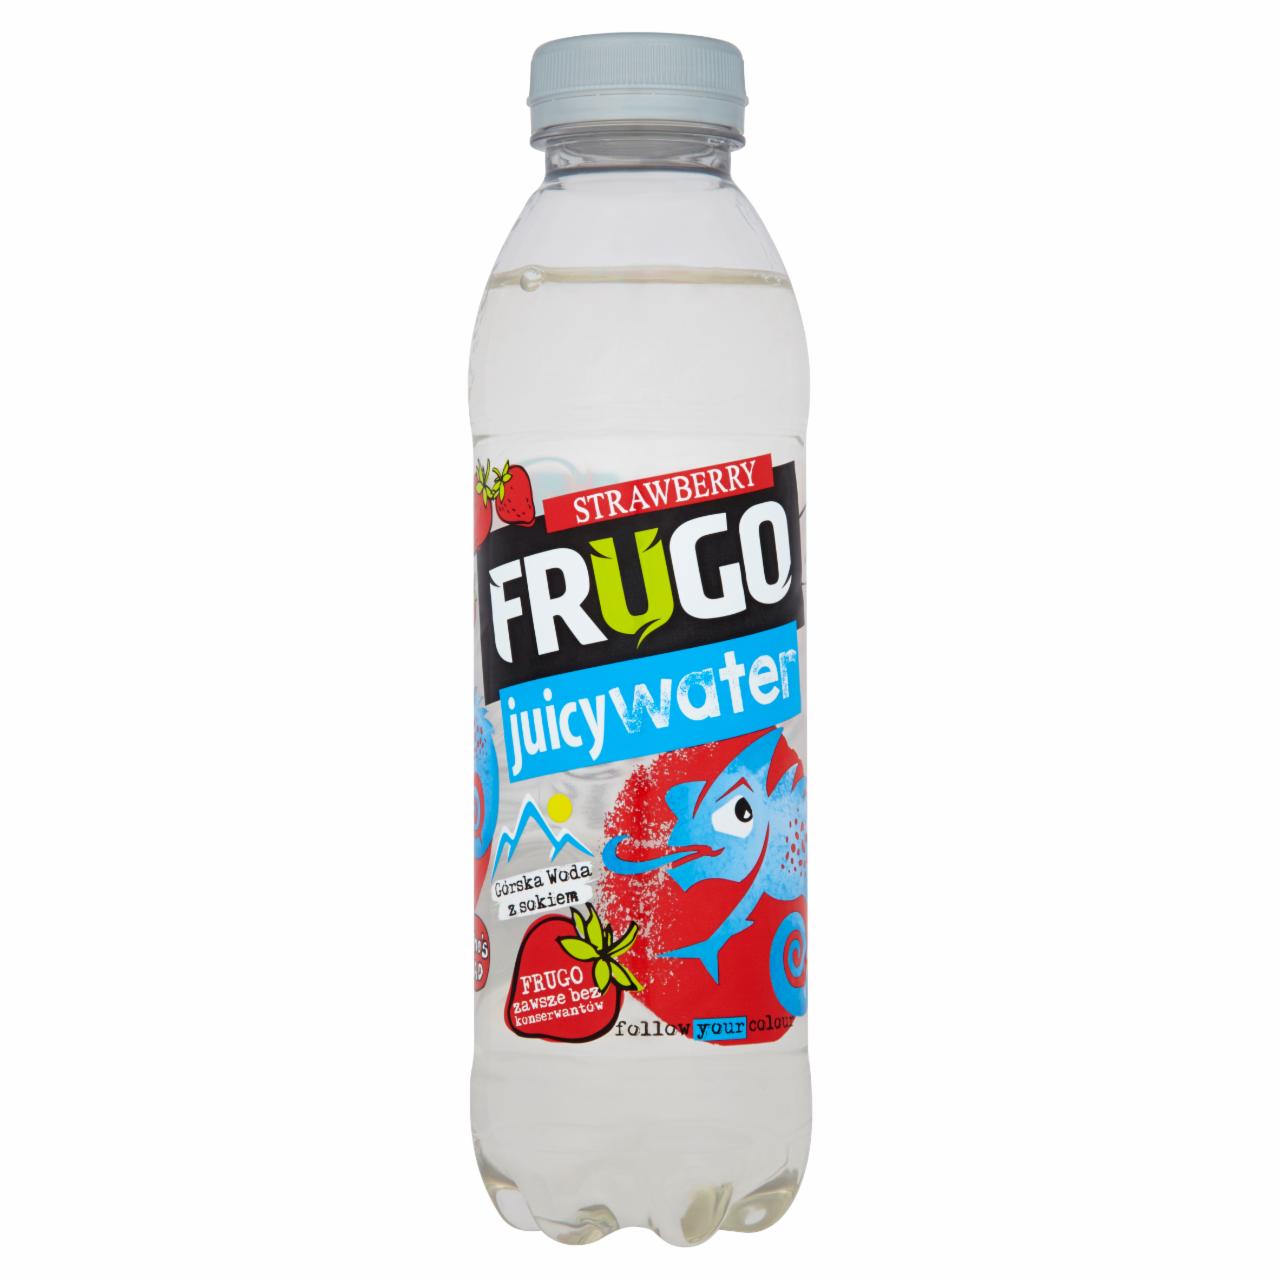 Zdjęcia - Frugo Juicy Water Strawberry Górska woda z sokiem 500 ml